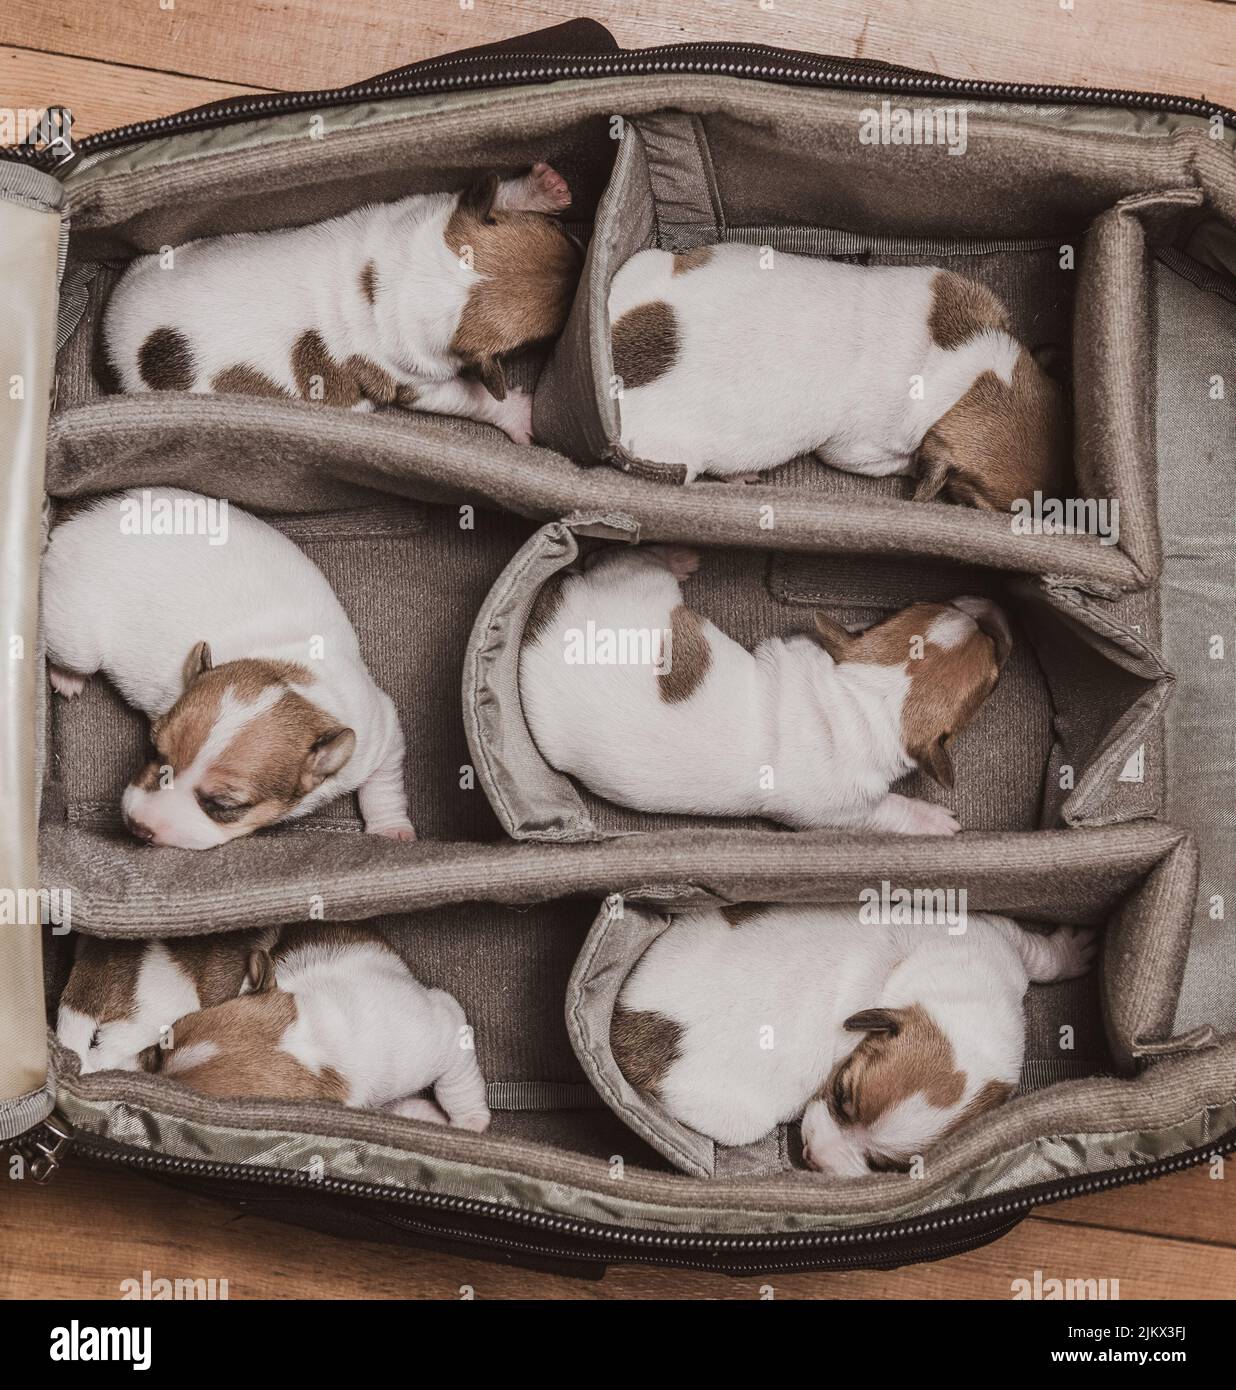 Eine Draufsicht auf sechs entzückende weiße und braune Jack Russel Terrier Welpen, die im Sack schlafen Stockfoto